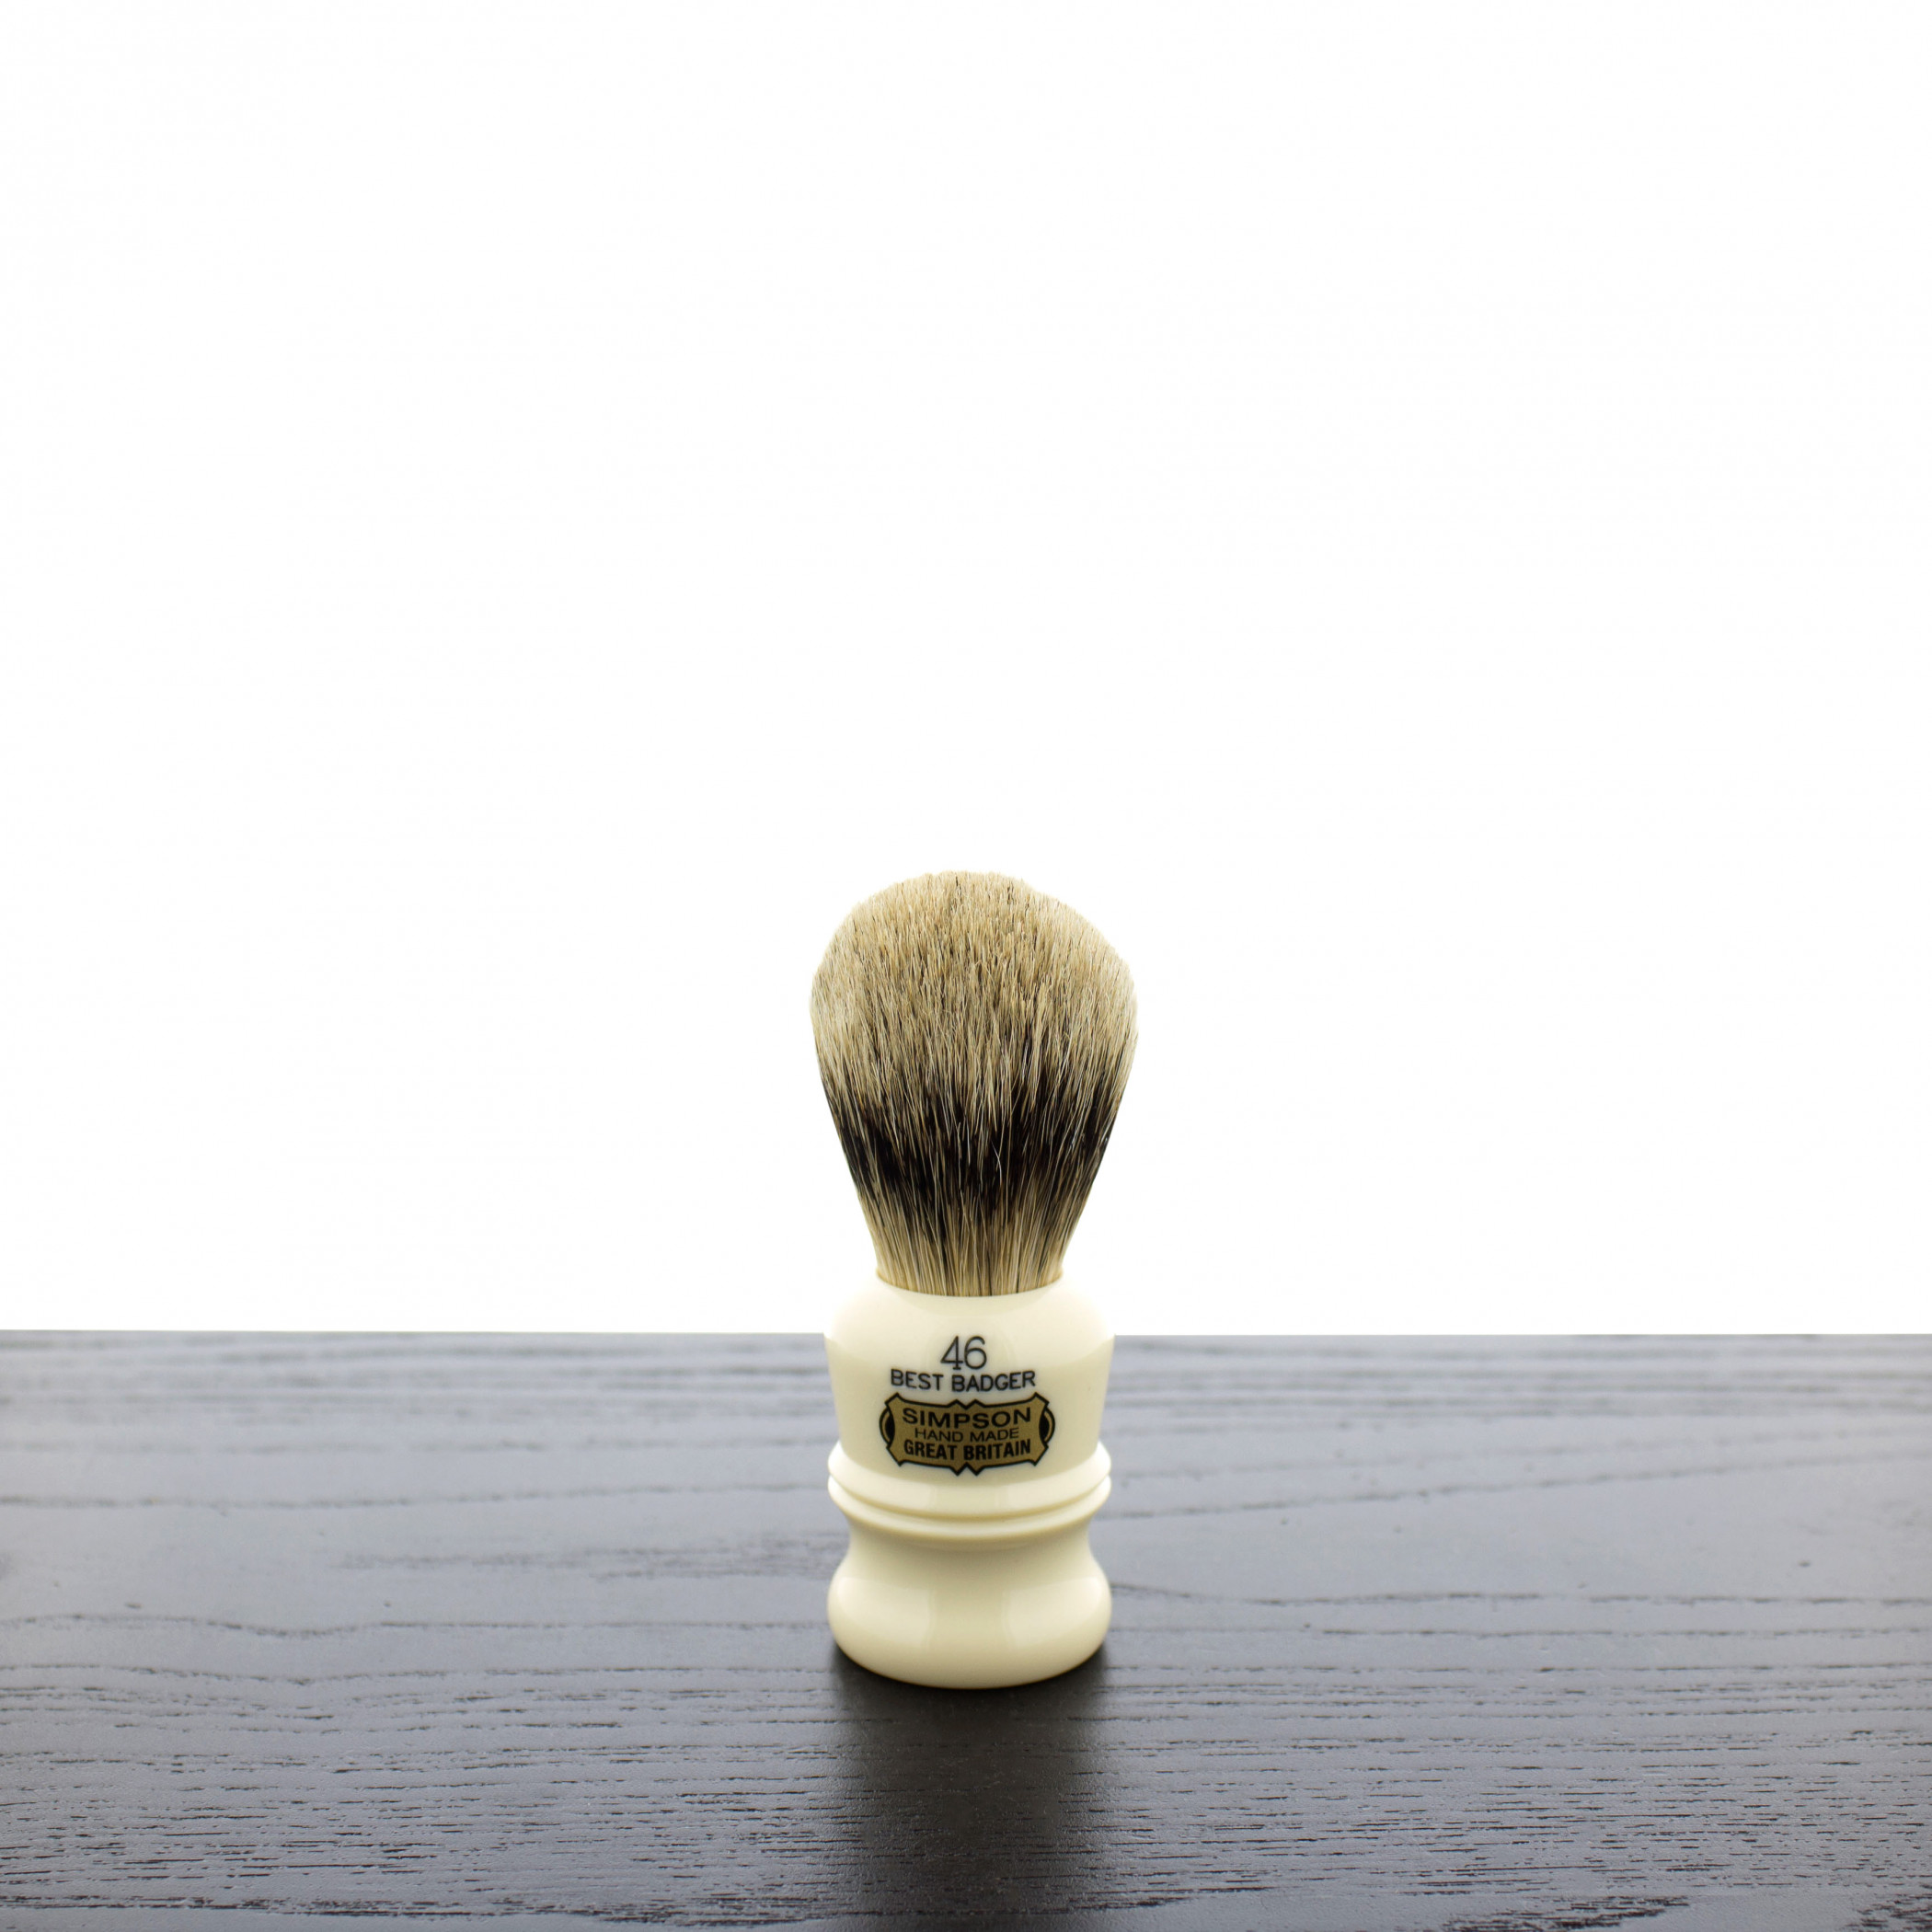 Product image 0 for Simpsons Berkeley Best Badger Shaving Brush 46B